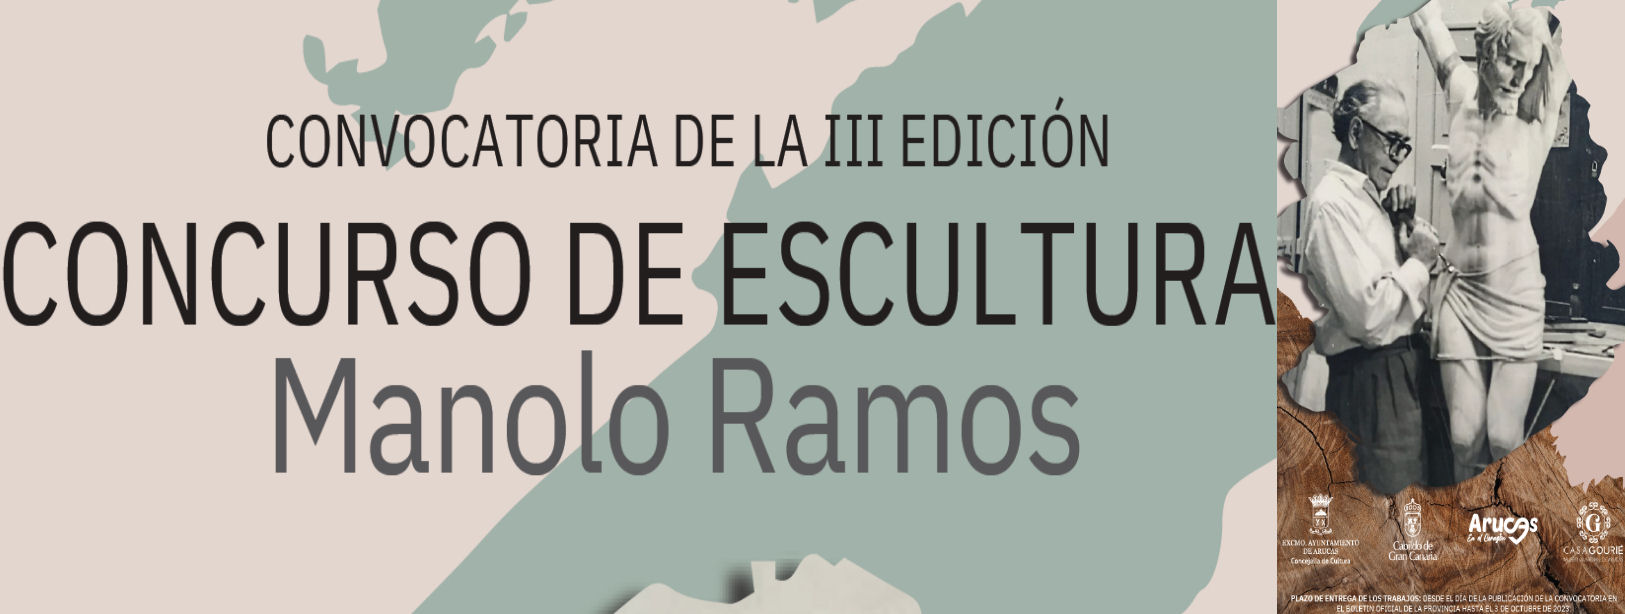 III EDICIÓN DEL CONSURSO DE ESCULTRA MANOLO RAMOS